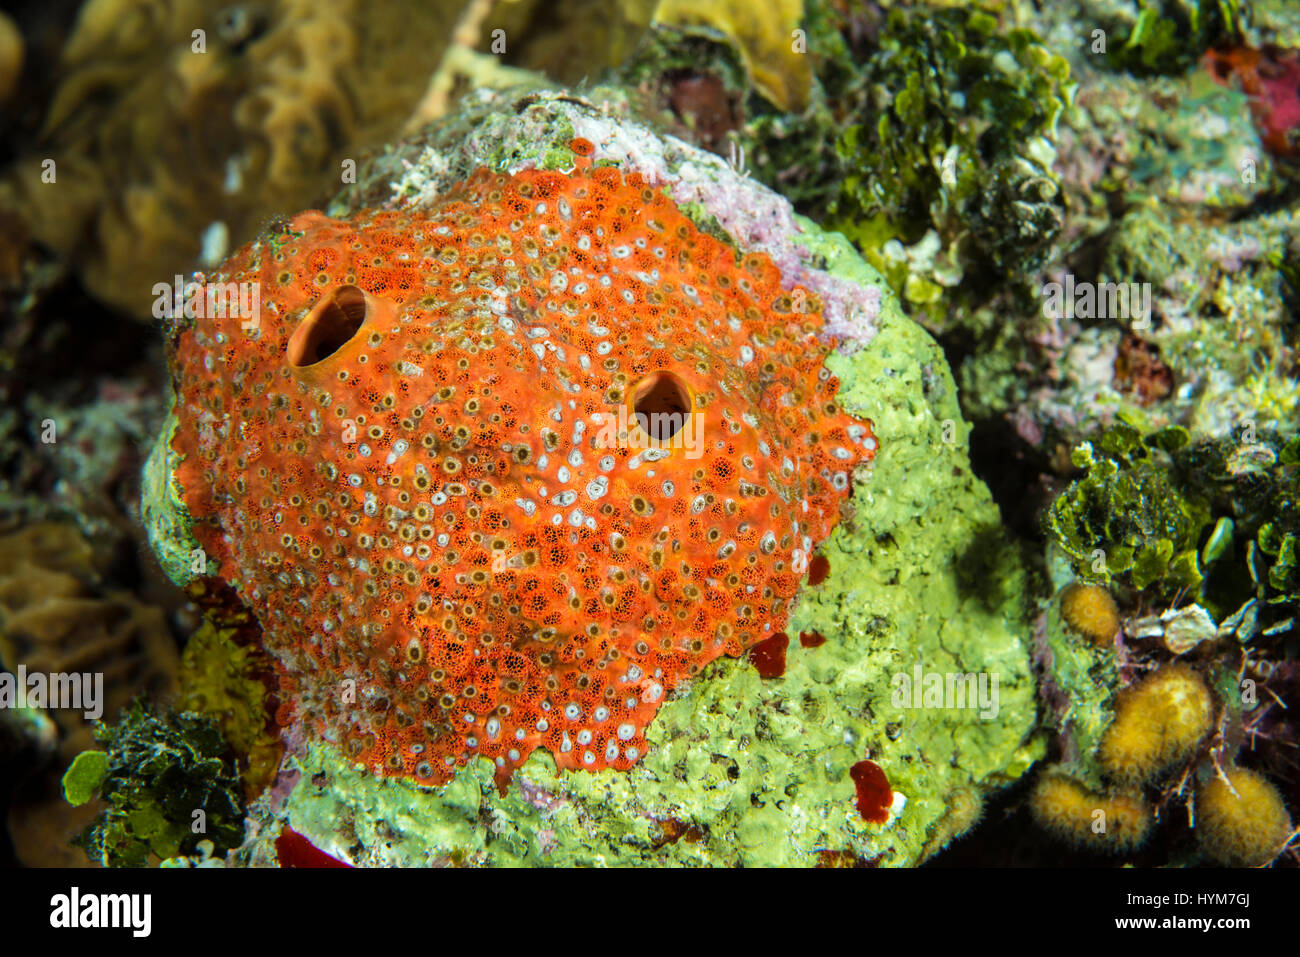 Red Boring Sponge (Cliona delitrix) drilling into a coral. .. Stock Photo